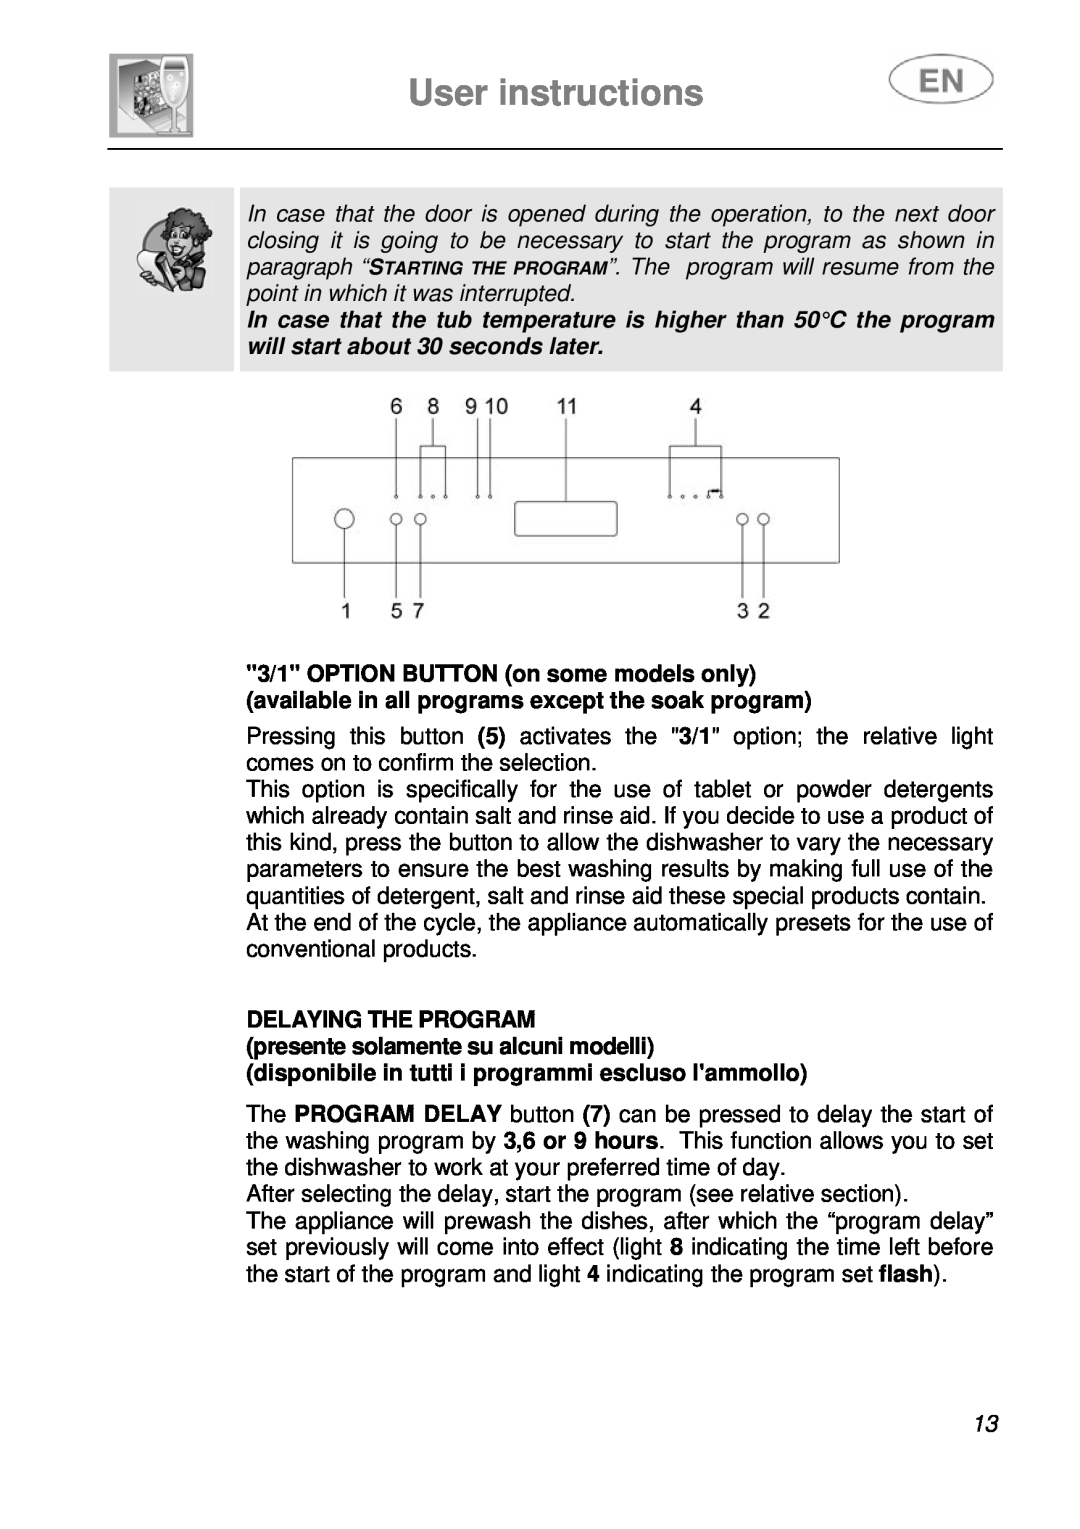 Smeg LVF649B instruction manual User instructions, Delaying The Program, presente solamente su alcuni modelli 